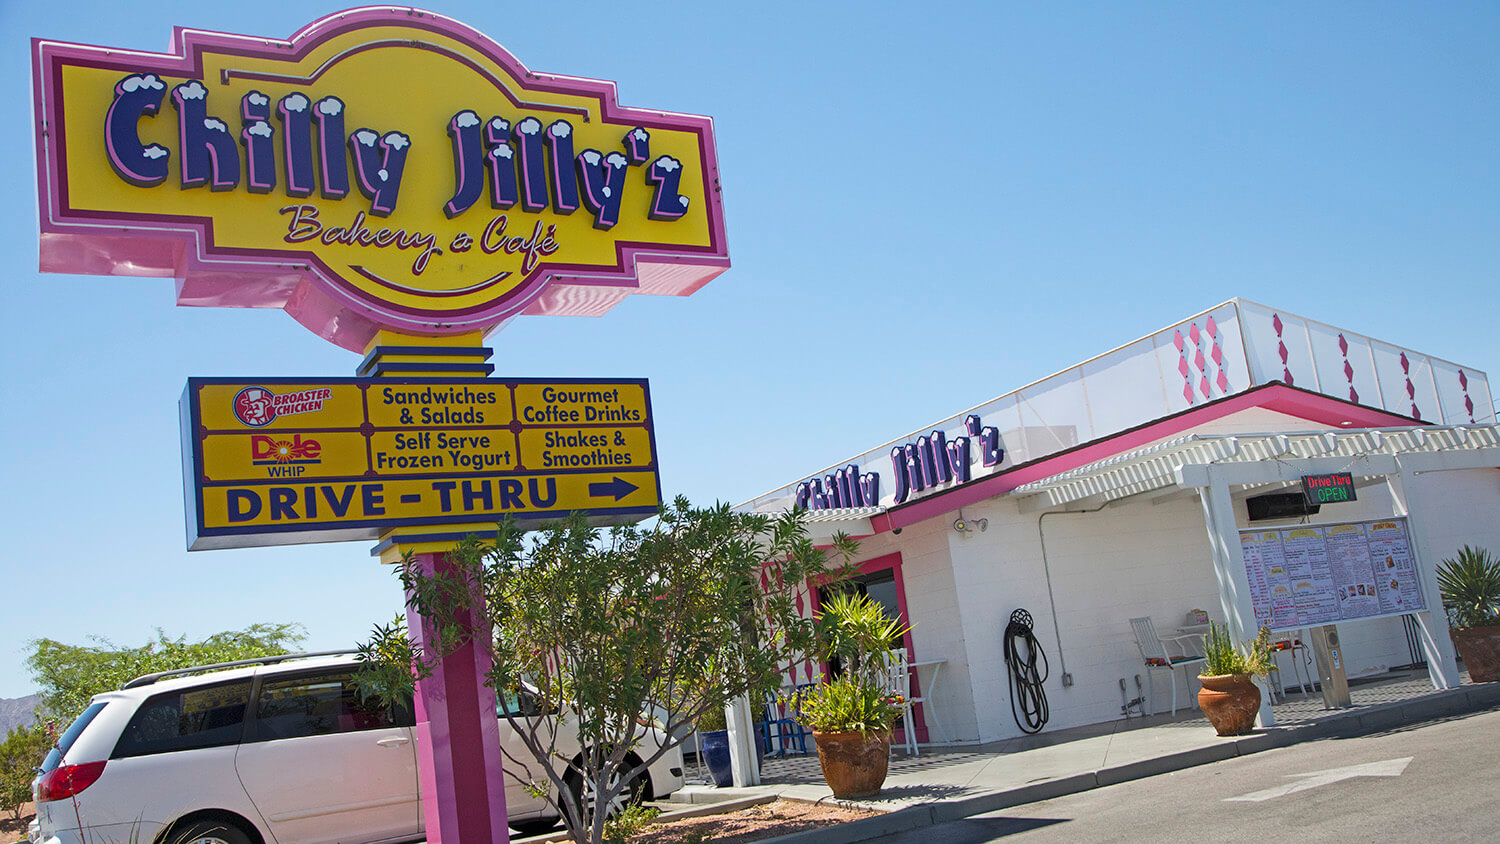 Chilly Jilly’z Bakery & Cafe